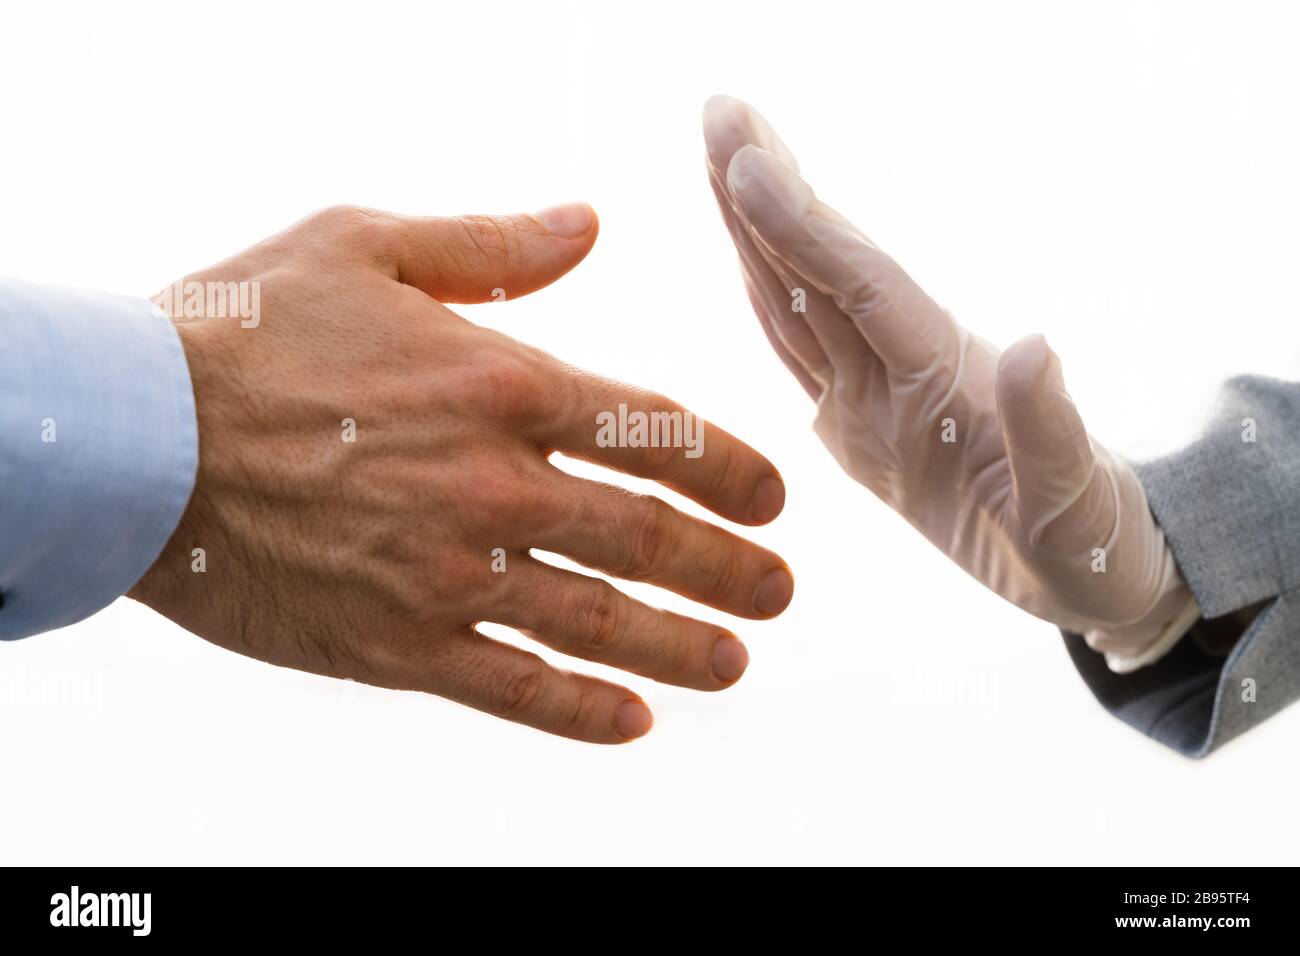 Rejecting Handshake During Coronavirus Pandemic To Stop Pandemic Stock Photo